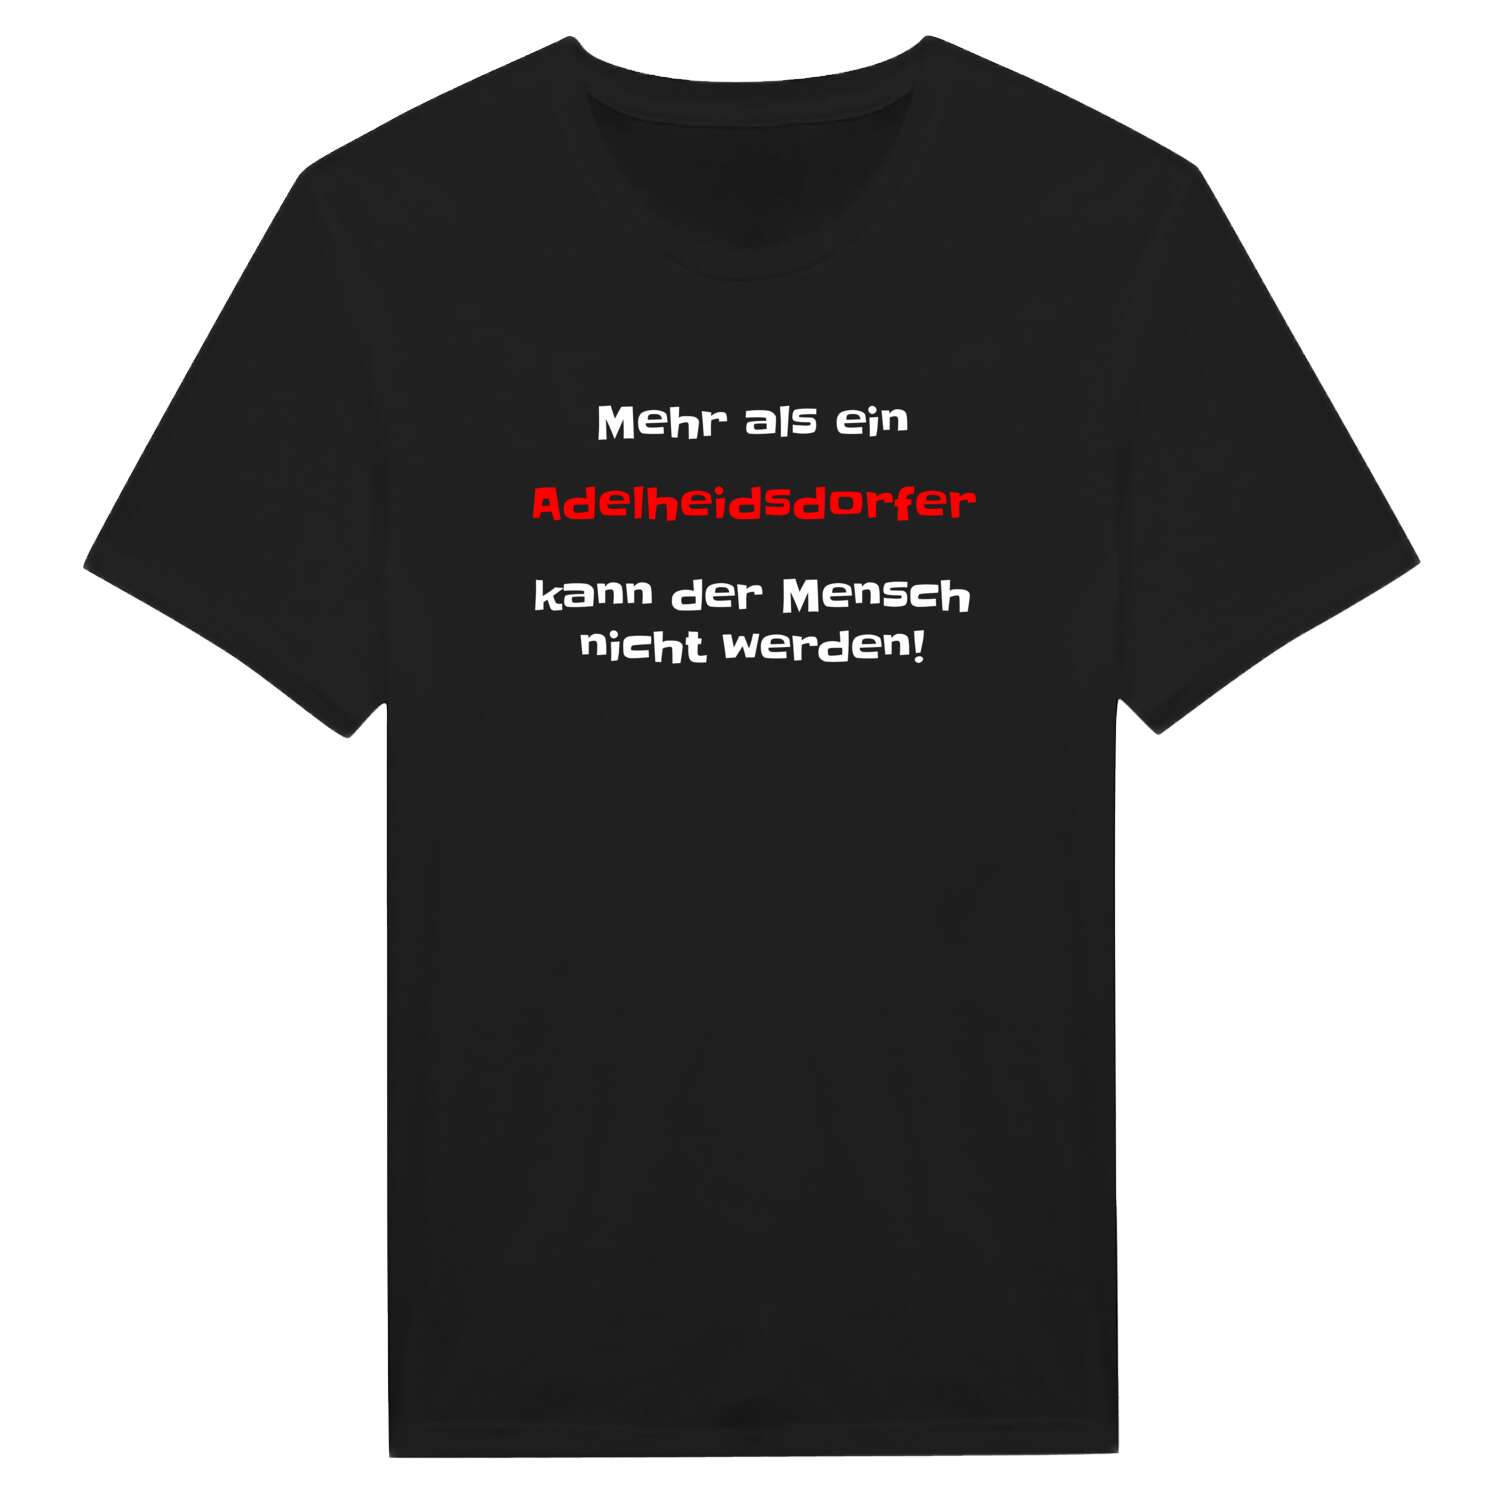 Adelheidsdorf T-Shirt »Mehr als ein«